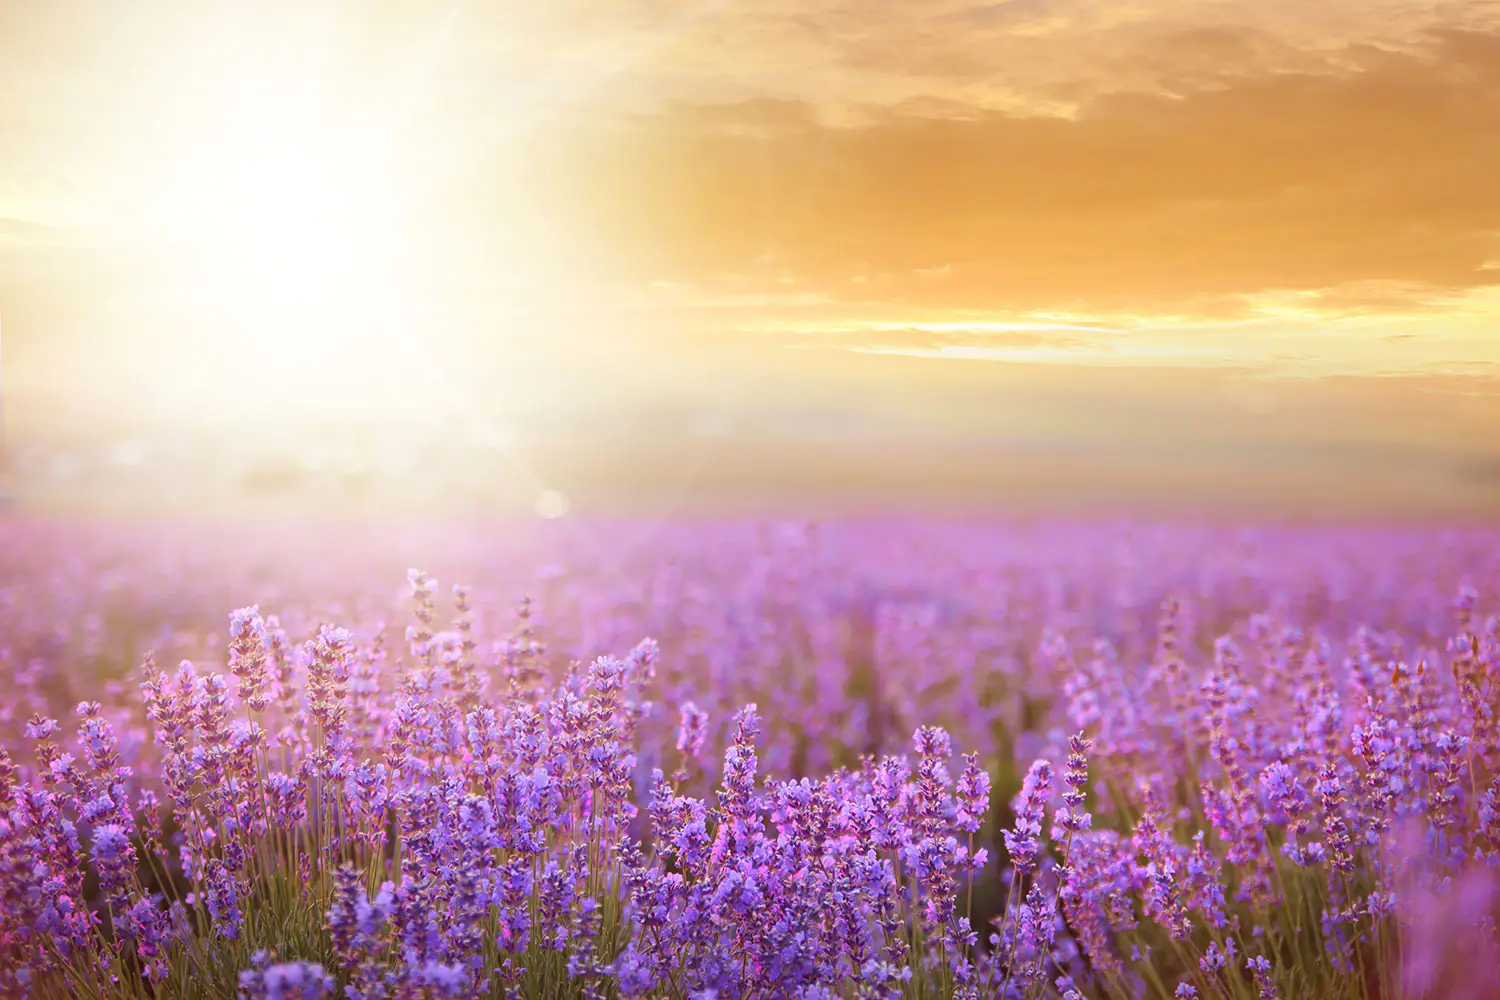 Valokuvatapetti Sunset In Lavender Field